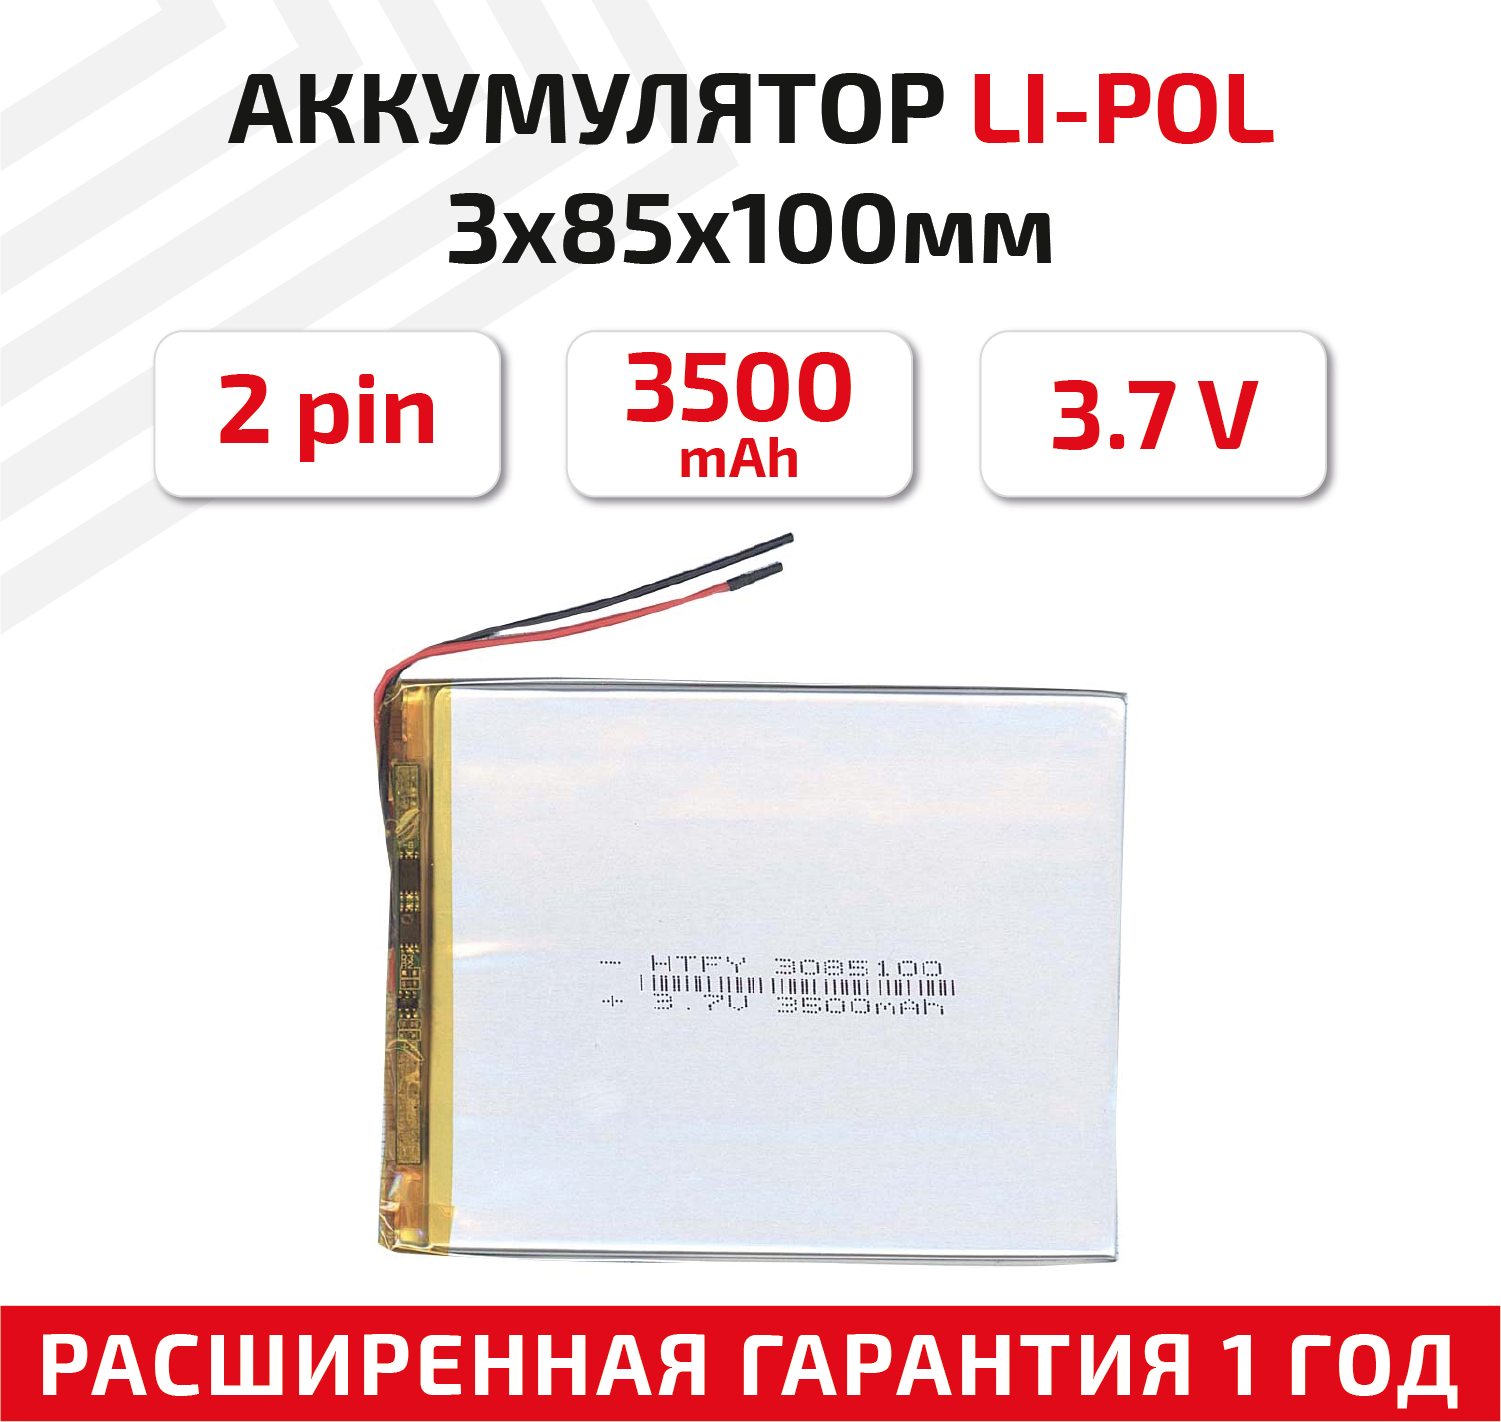 Универсальный аккумулятор (АКБ) для планшета, видеорегистратора и др, 3х85х100мм, 3500мАч, 3.7В, Li-Pol, 2pin (на 2 провода)